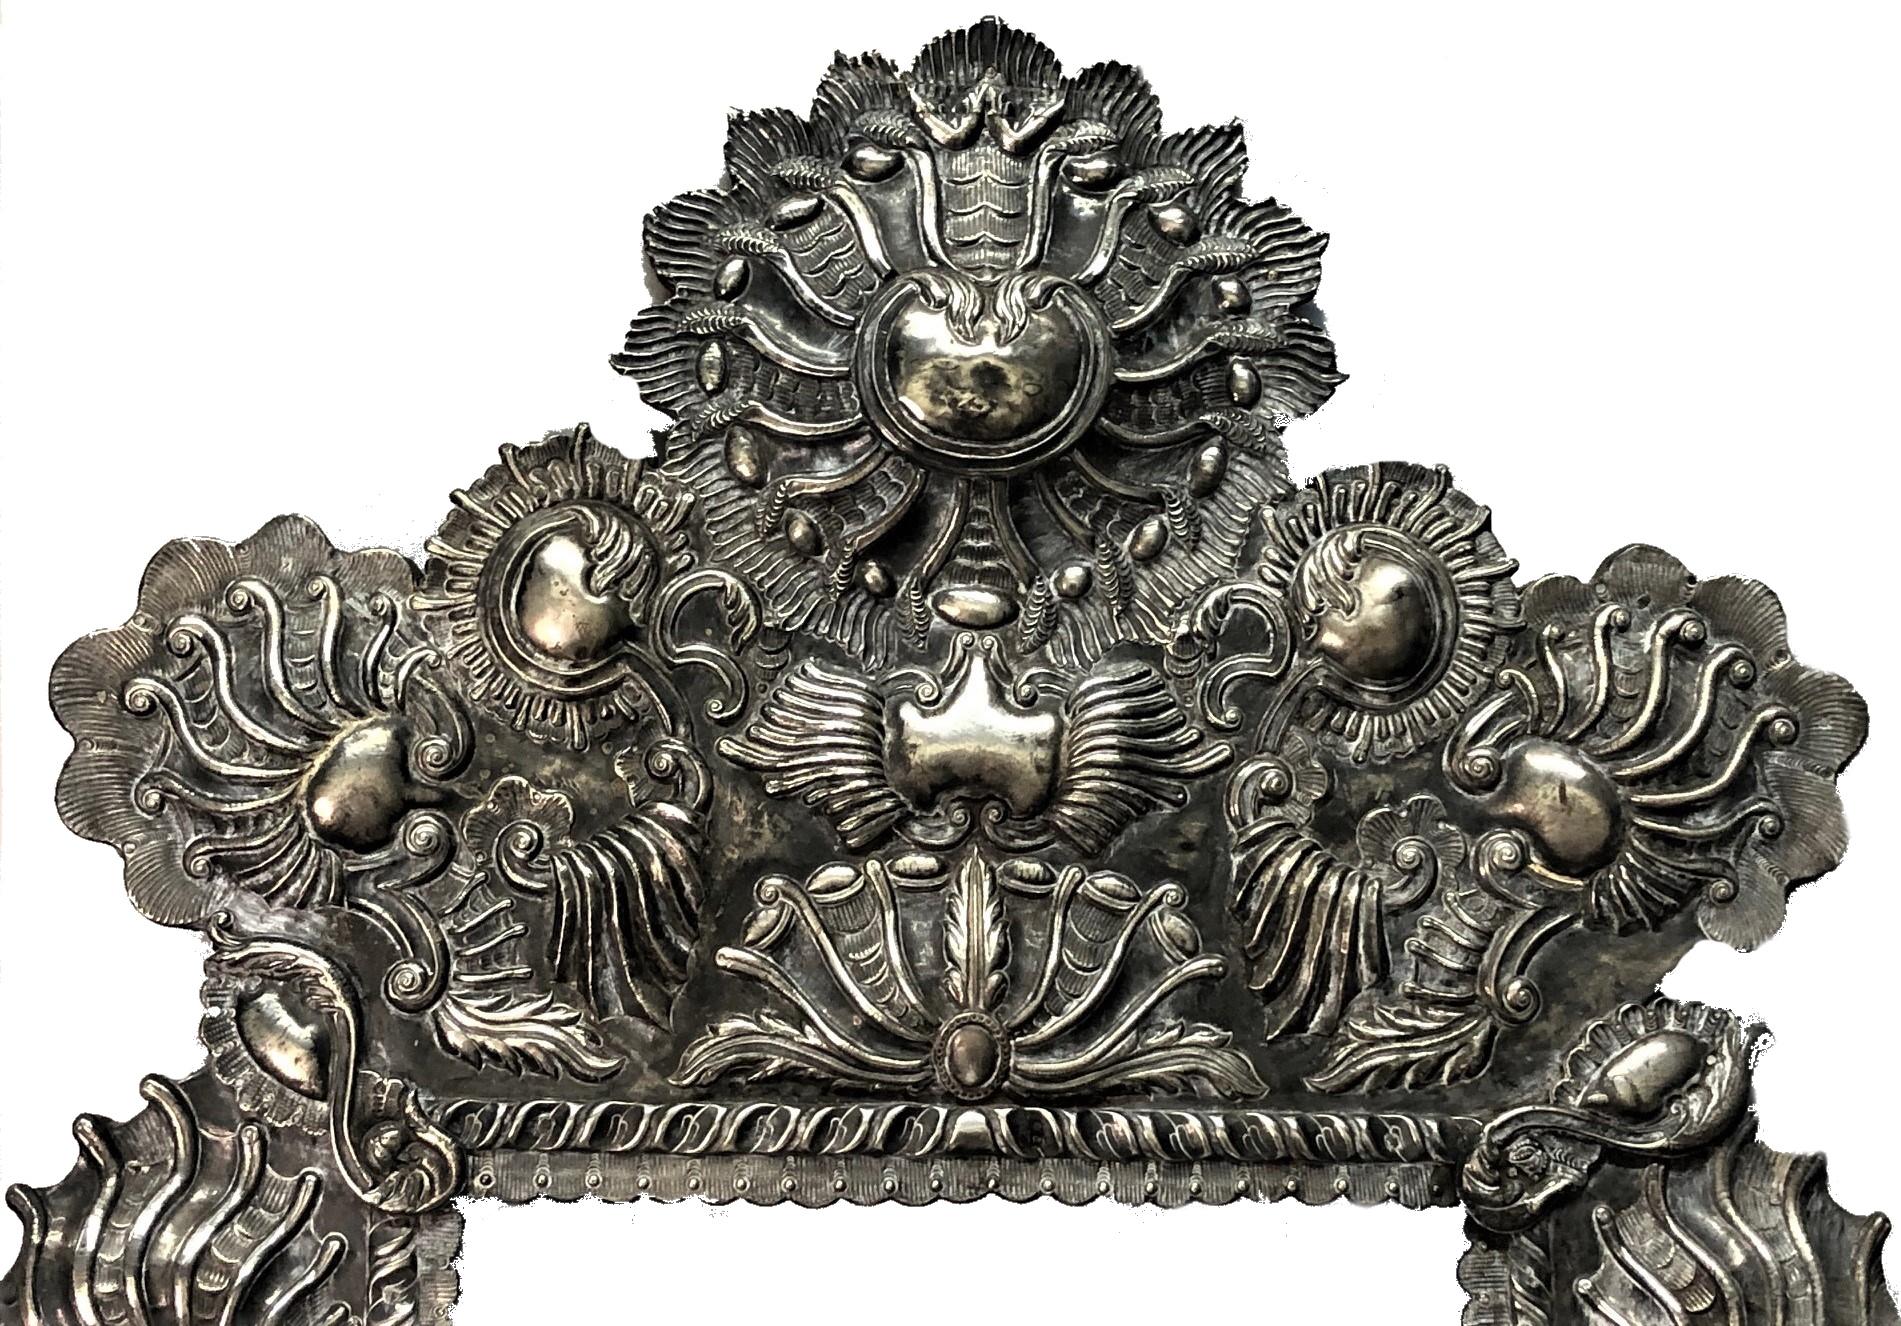 ÜBER FRAME
Dieser Rahmen wurde im 17. Jahrhundert in Handarbeit von einem außergewöhnlichen spanischen Silberschmied gefertigt. Außergewöhnlich komplex, nicht nur in seiner exquisiten und aufwendigen Gestaltung, sondern auch mit der Verwendung